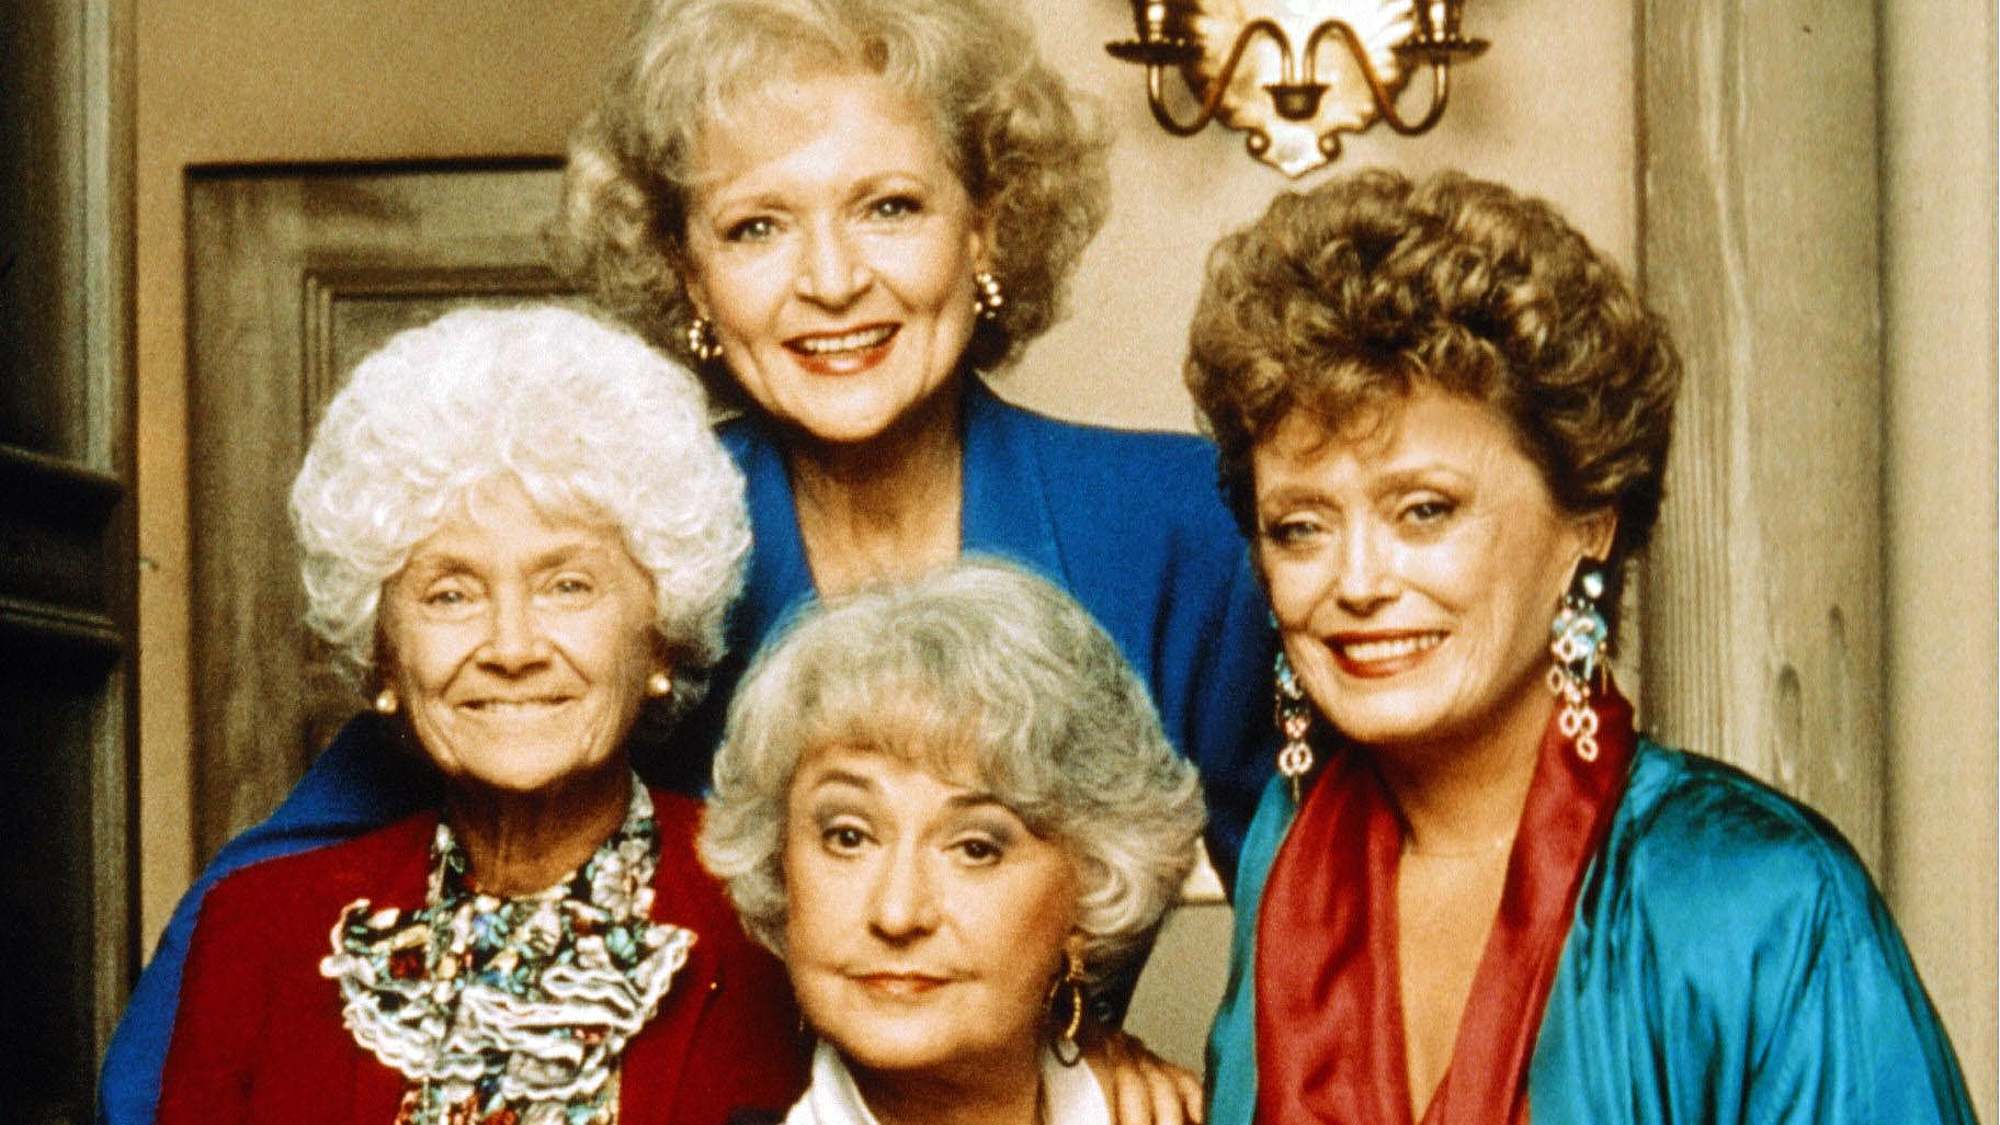 (Von links nach rechts im Uhrzeigersinn) Estelle Getty, Betty White, Rue McClanahan und Bea Arthur in Golden Girls